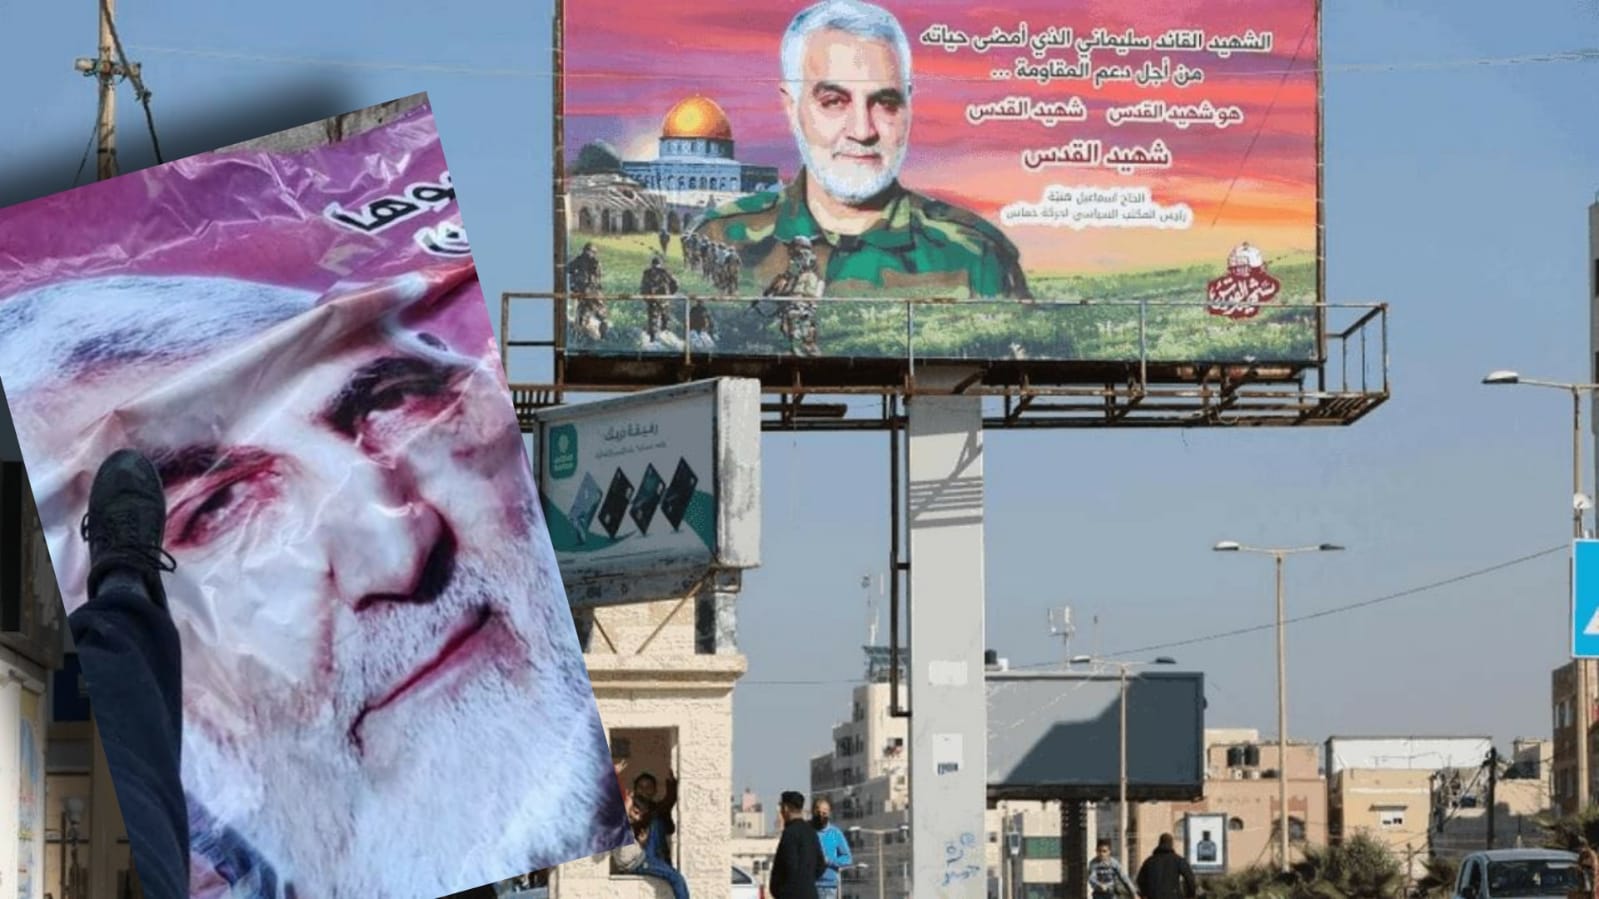 Gazze'de Kasım Süleymani öfkesi: Posterleri yırtılıp çiğnendi